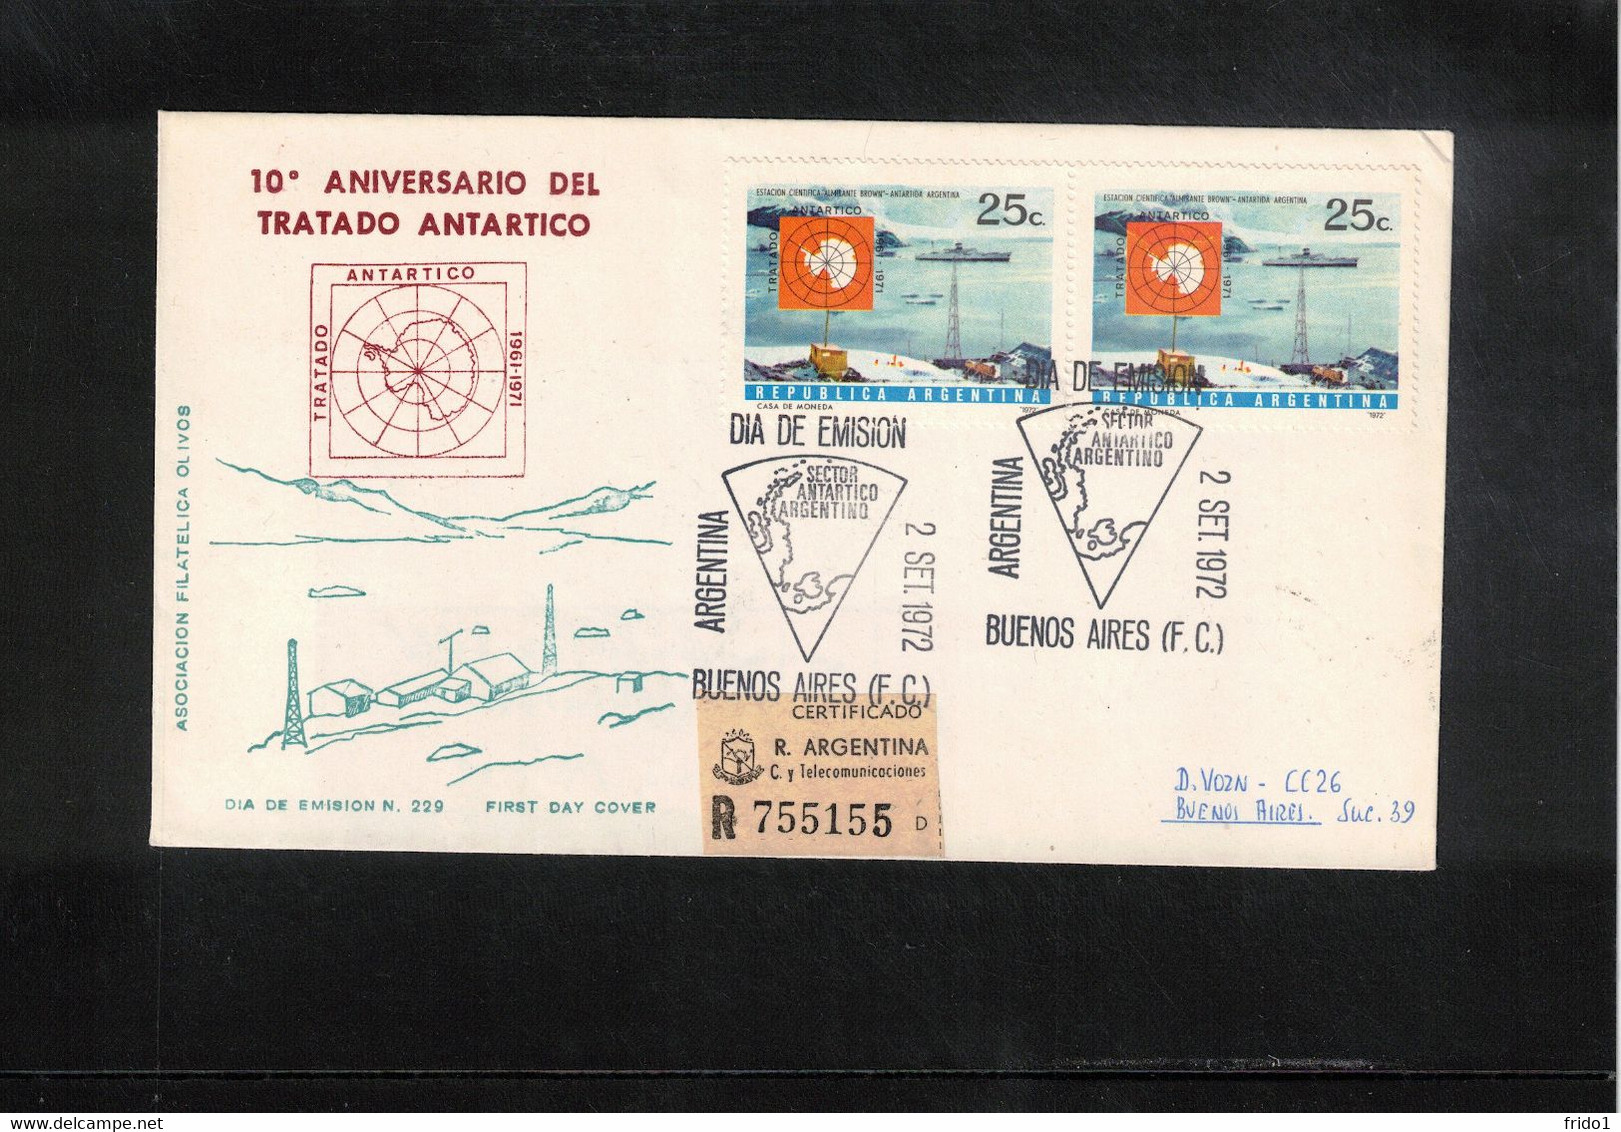 Argentina 1972 10th Anniversary Of Antarctica Treaty Interesting Registered Letter - Antarktisvertrag